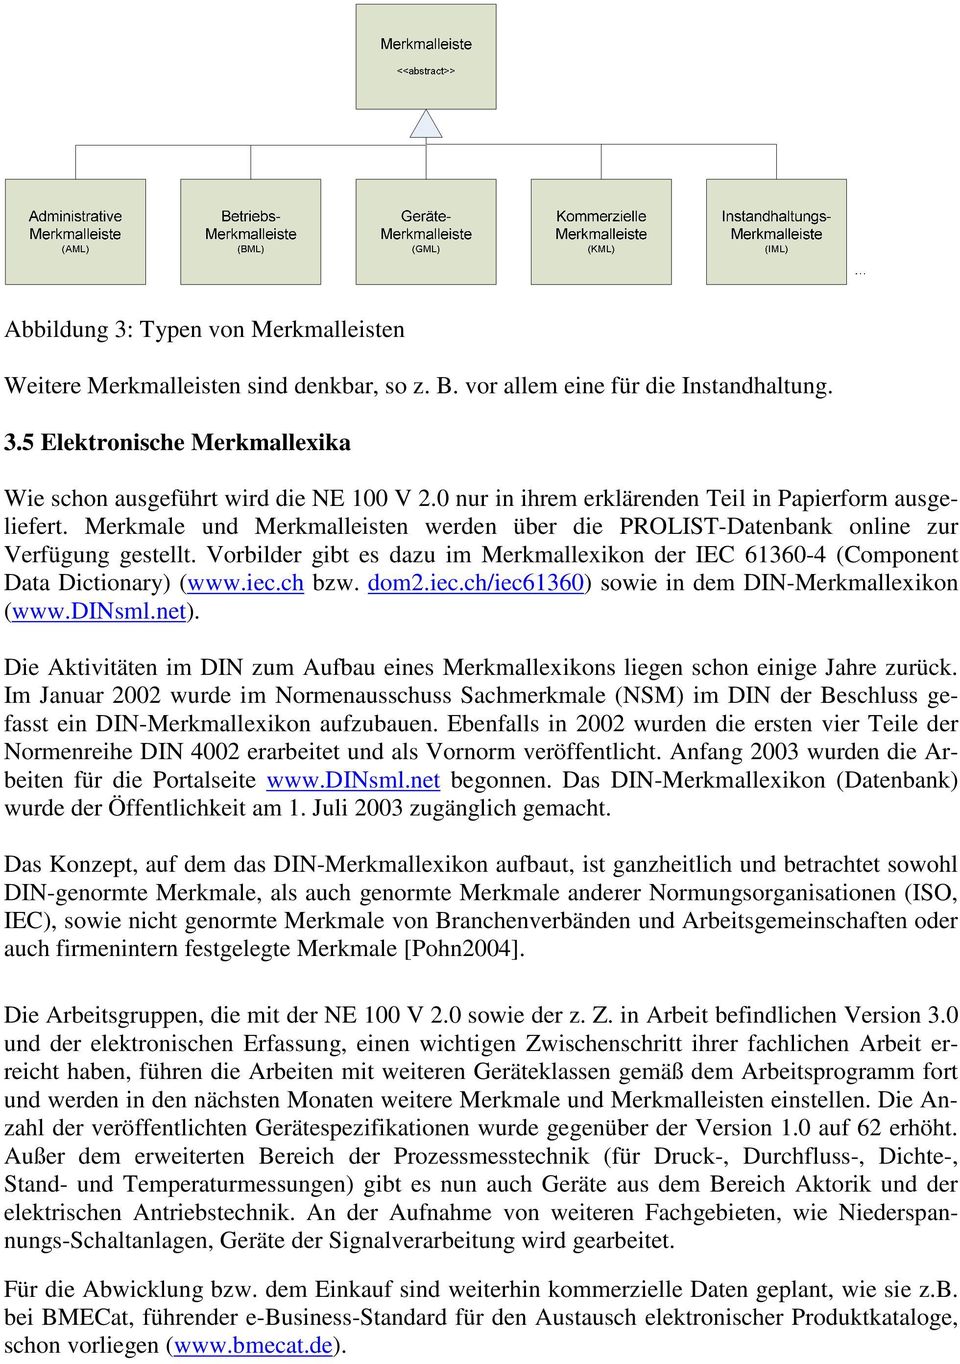 Vorbilder gibt es dazu im Merkmallexikon der IEC 61360-4 (Component Data Dictionary) (www.iec.ch bzw. dom2.iec.ch/iec61360) sowie in dem DIN-Merkmallexikon (www.dinsml.net).